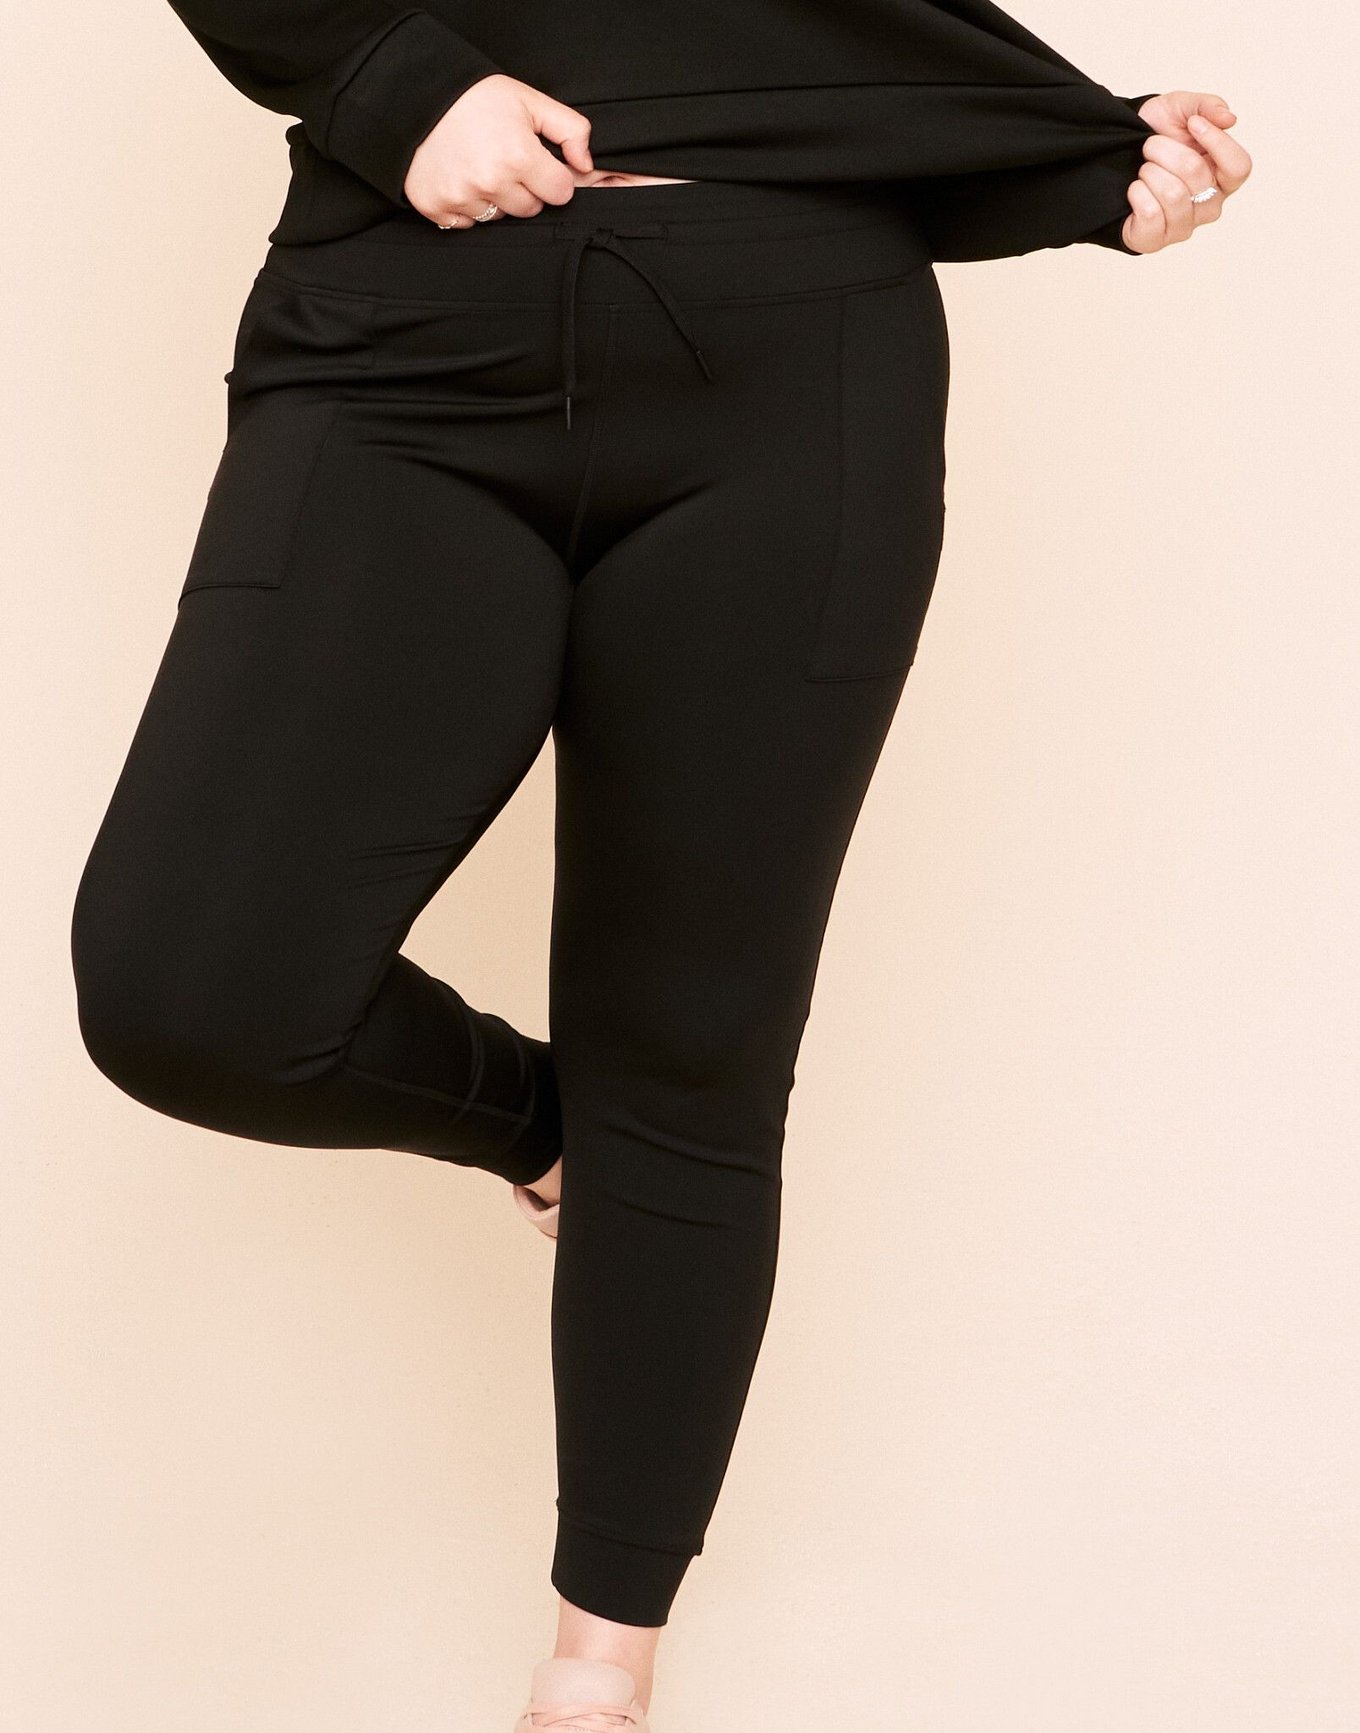 Jenesis Fitted Legging Black Plus Full length fitted legging, 1X